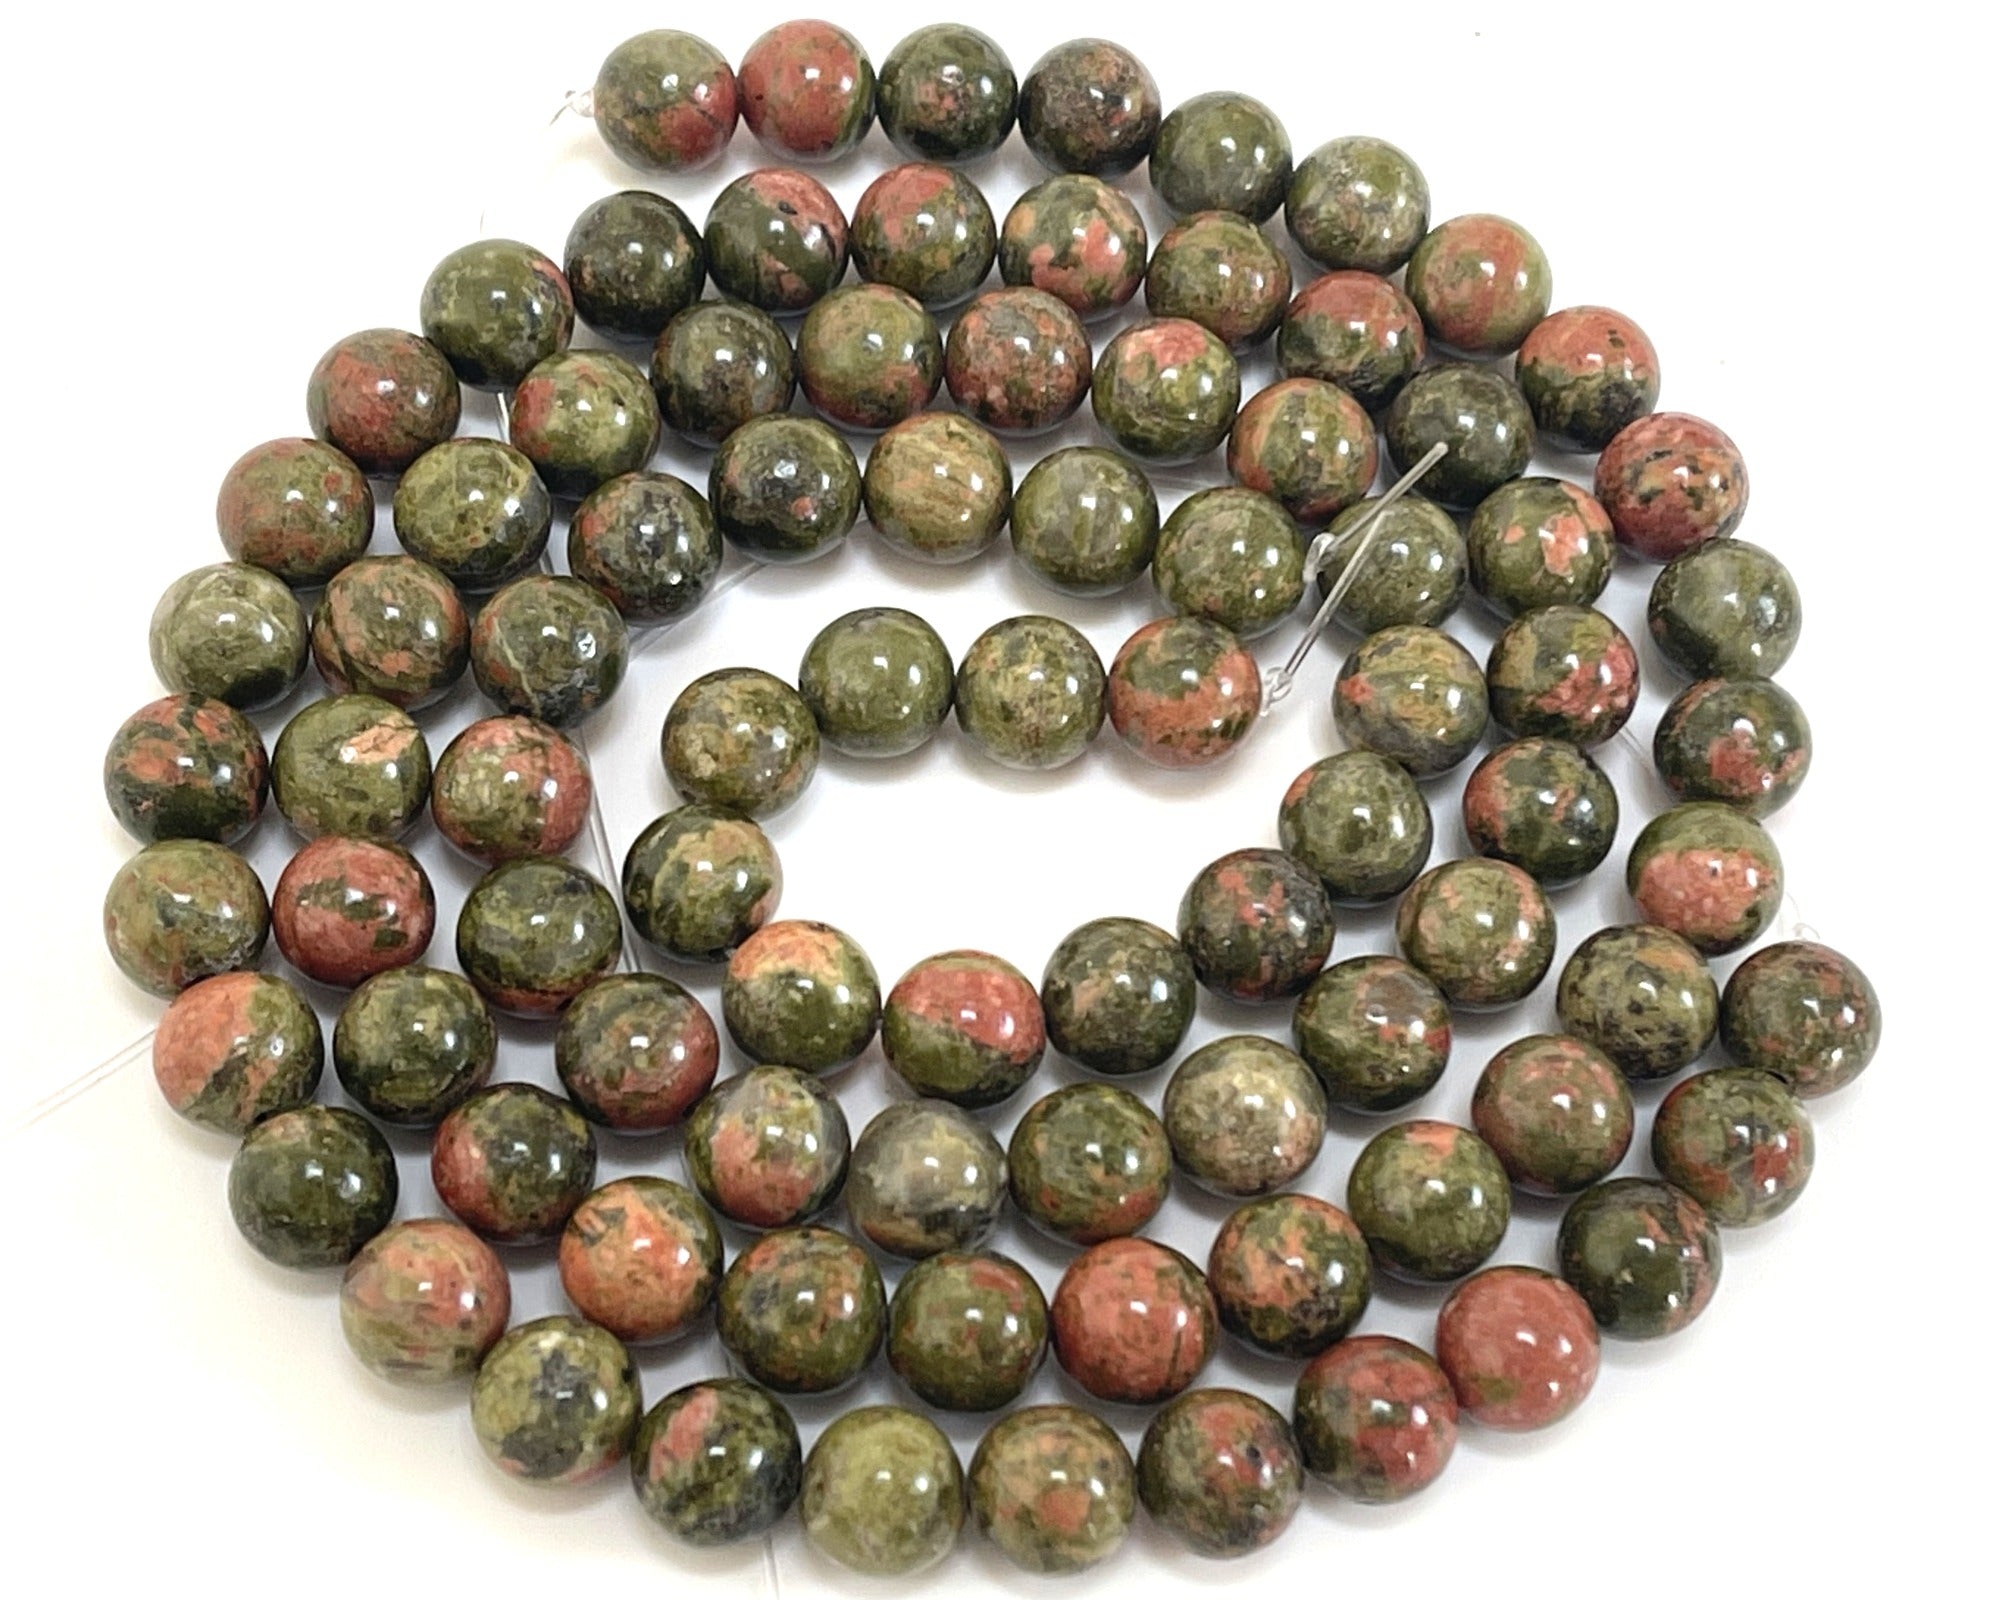 Unakite Jasper 8mm round natural gemstone beads 15" strand - Oz Beads 